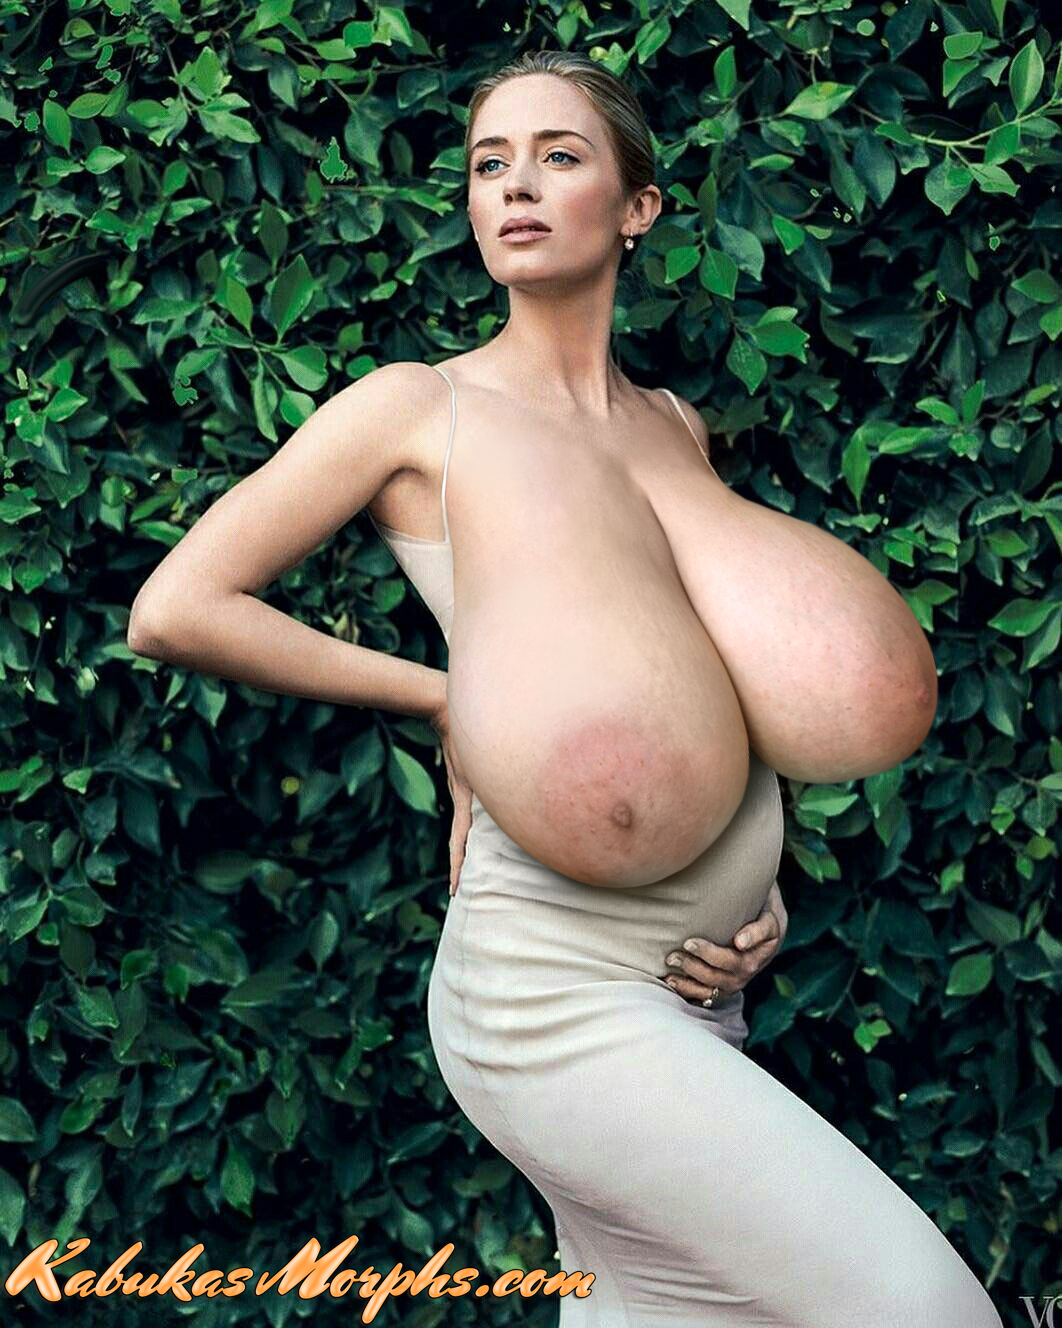 Pregnant Huge Tits Morphs - Pregnant Em.Bl. got huge saggy tits â€“ Kabuka's Morphs